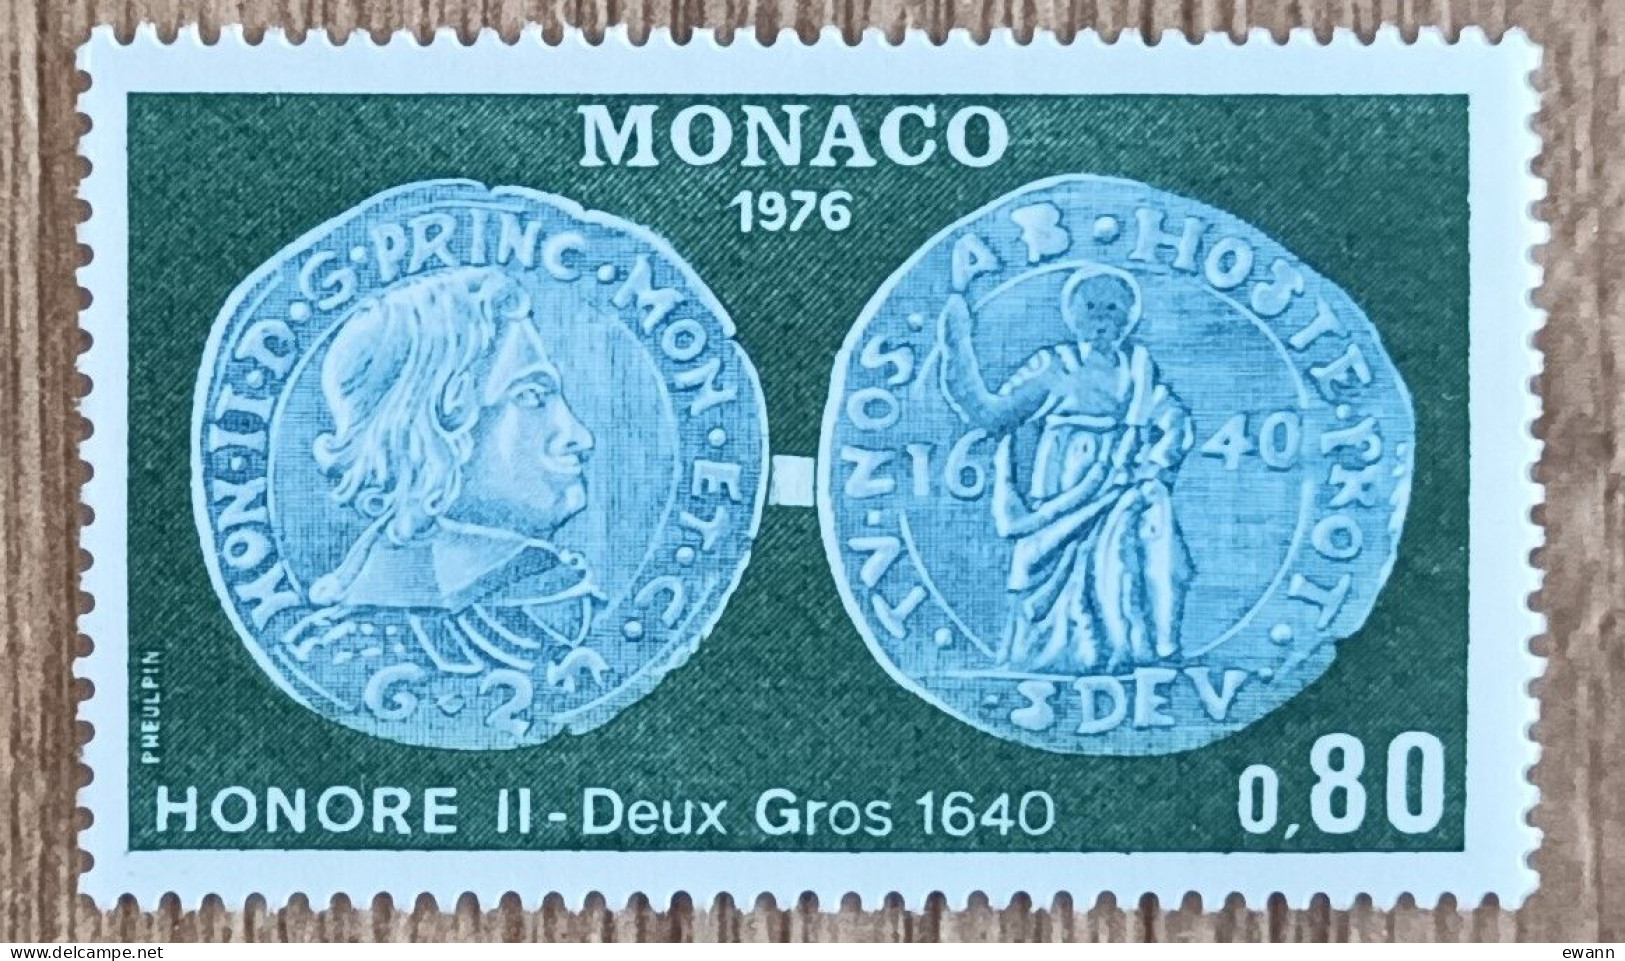 Monaco - YT N°1069 - Numismatique - 1976 - Neuf - Neufs